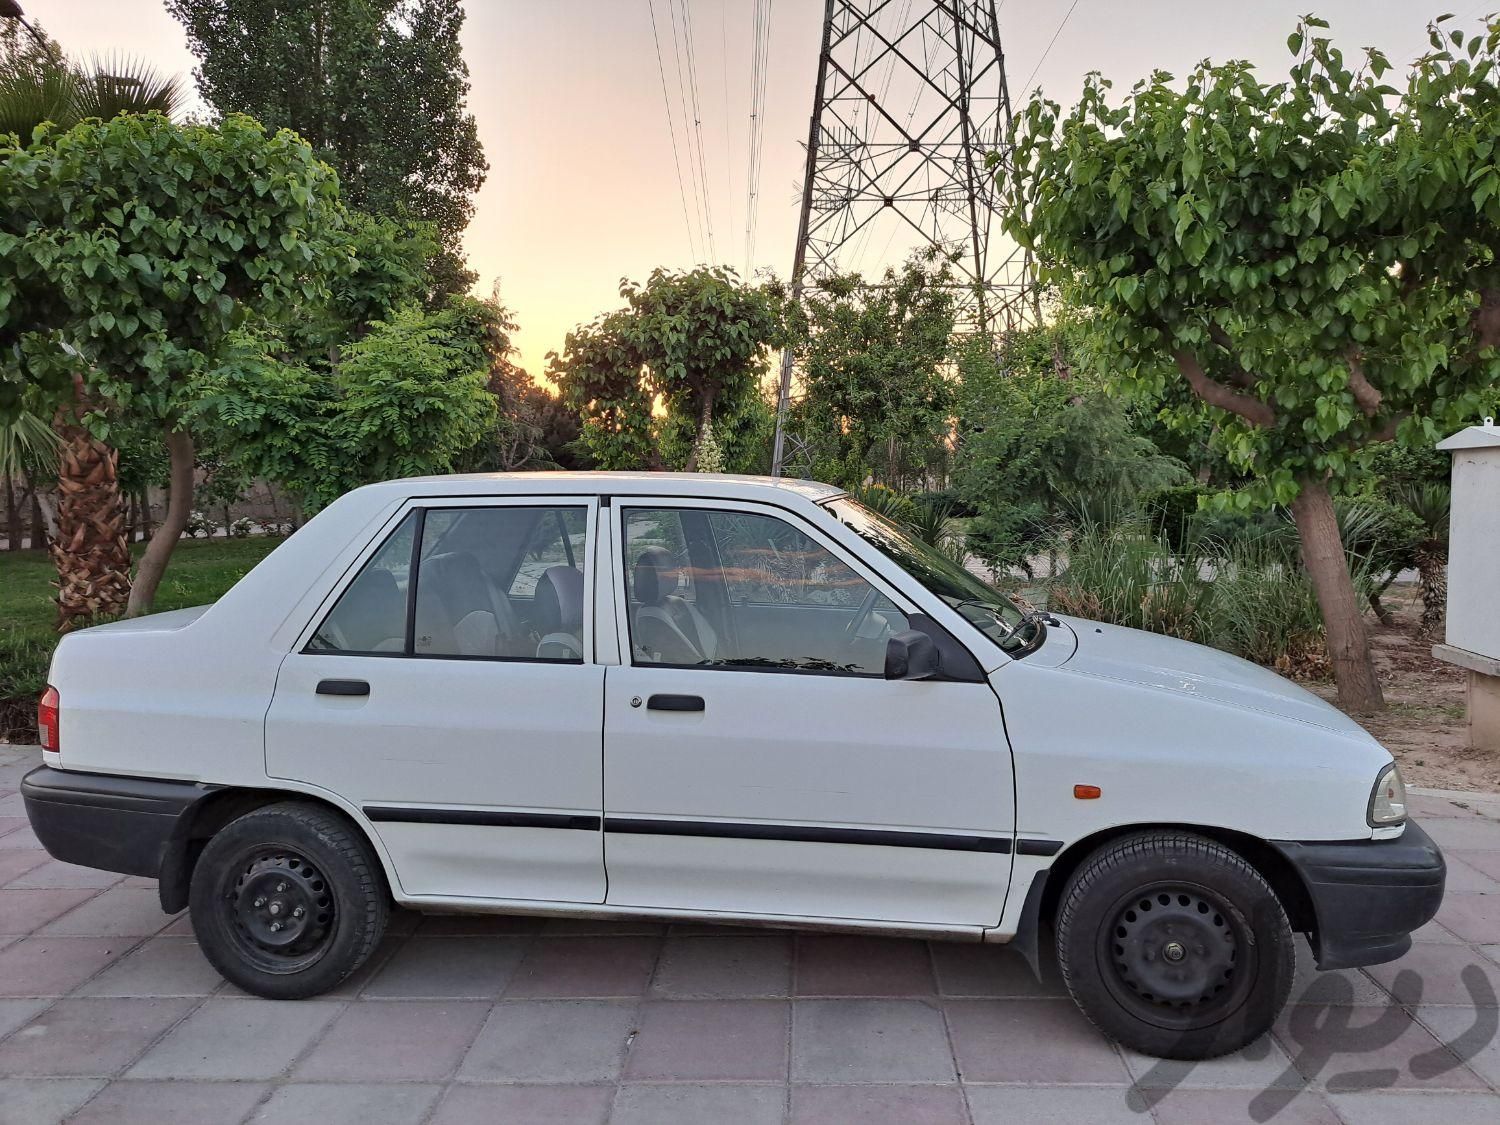 پراید 131 SE، مدل ۱۳۹۶|سواری و وانت|تهران, بریانک|دیوار